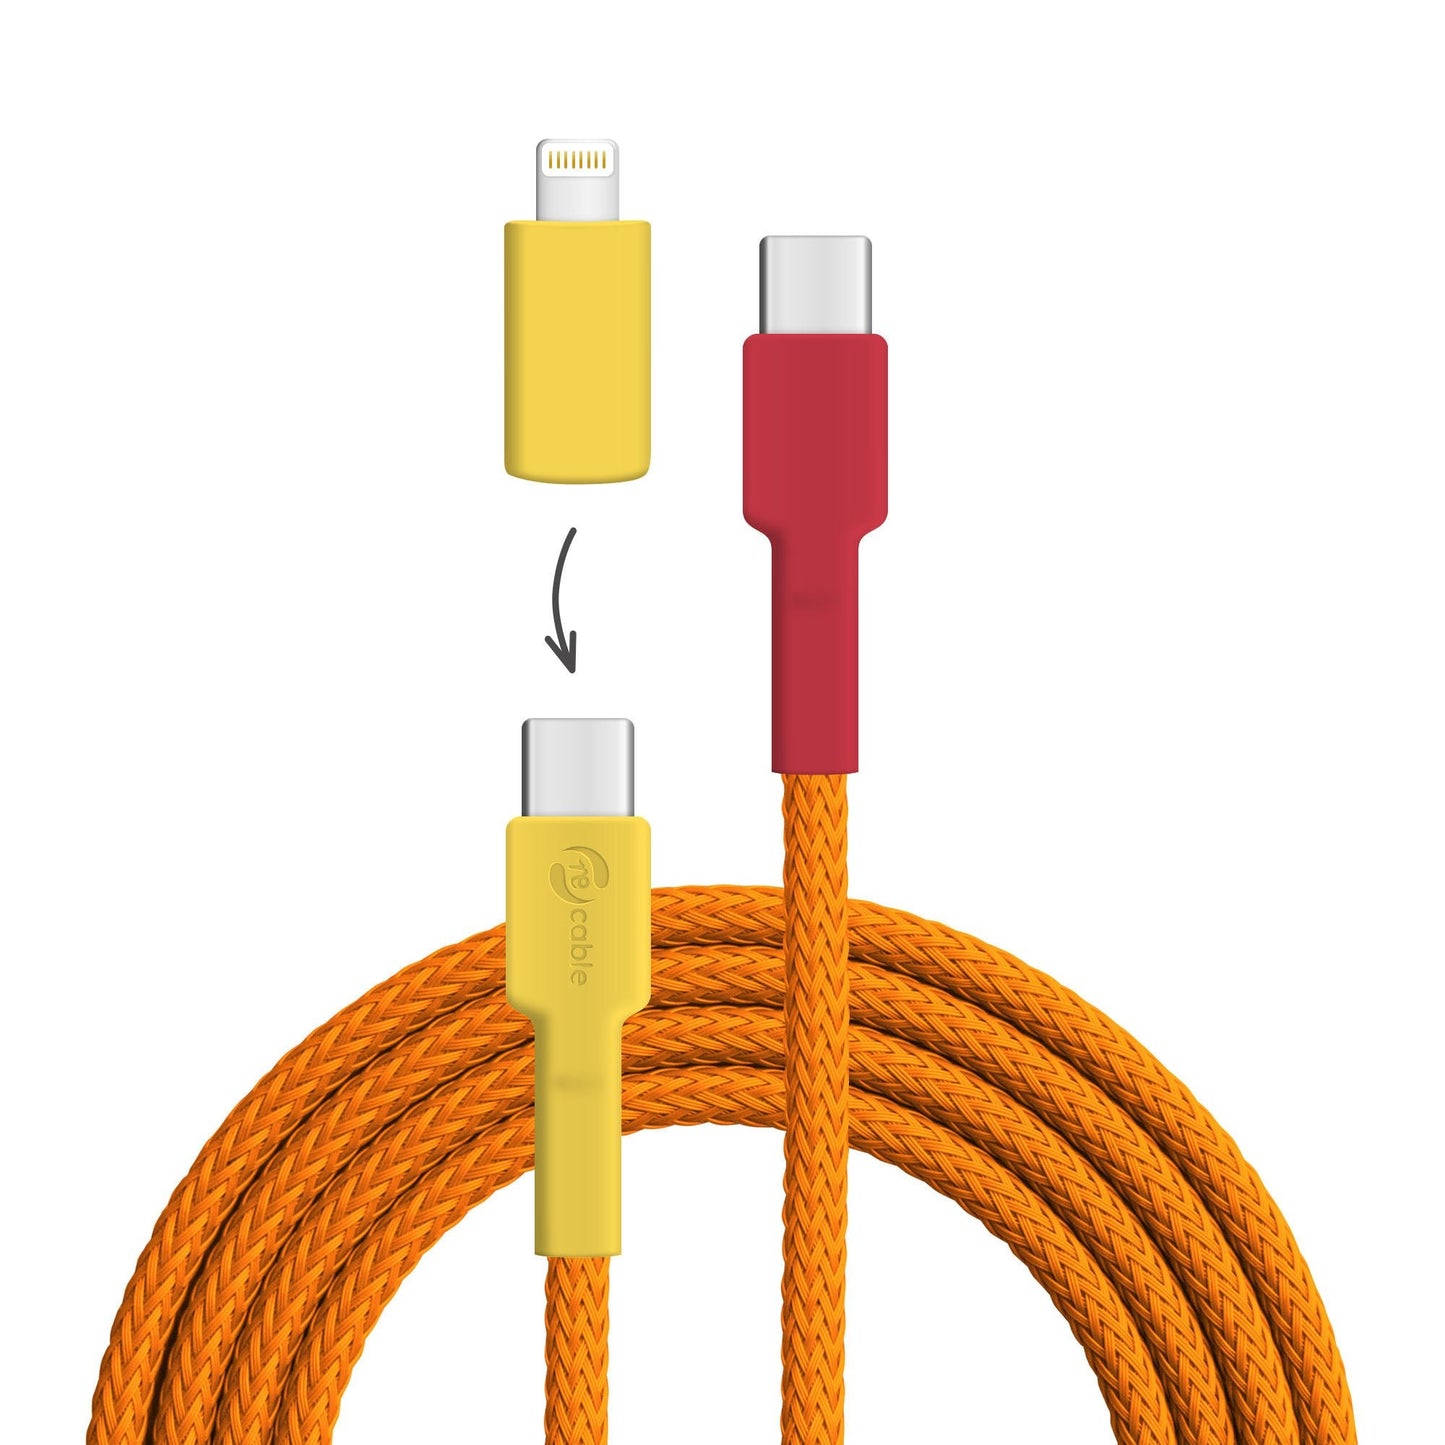 USB-Kabel, Design: Flammenlaubenvogel, Anschlüsse: USB C auf USB C mit Lightning Adapter (nicht verbunden)